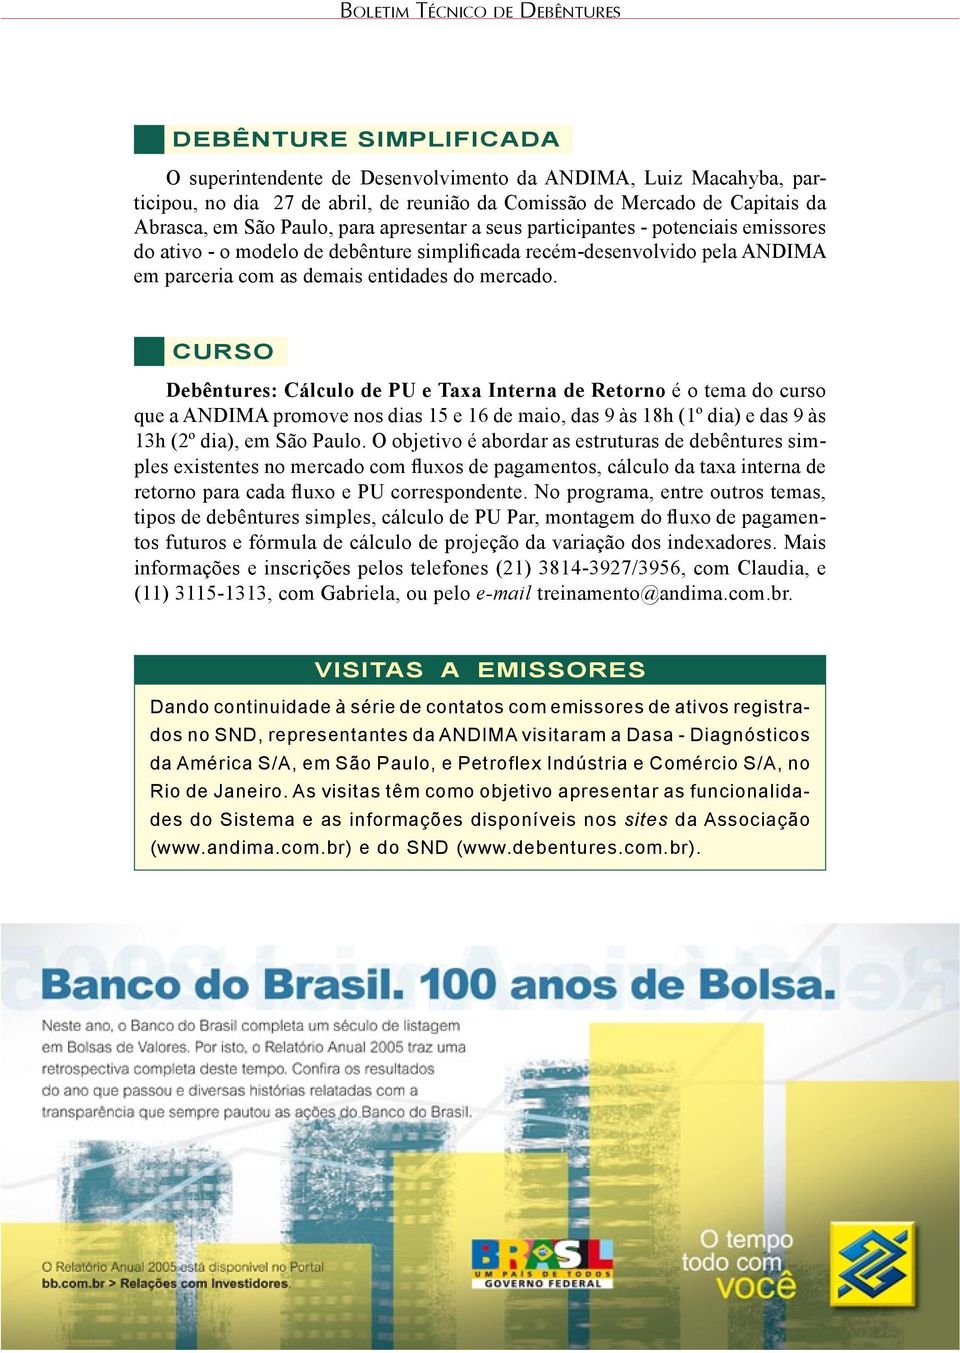 Curso Debêntures: Cálculo de PU e Taxa Interna de Retorno é o tema do curso que a ANDIMA promove nos dias 15 e 16 de maio, das 9 às 18h (1º dia) e das 9 às 13h (2º dia), em São Paulo.